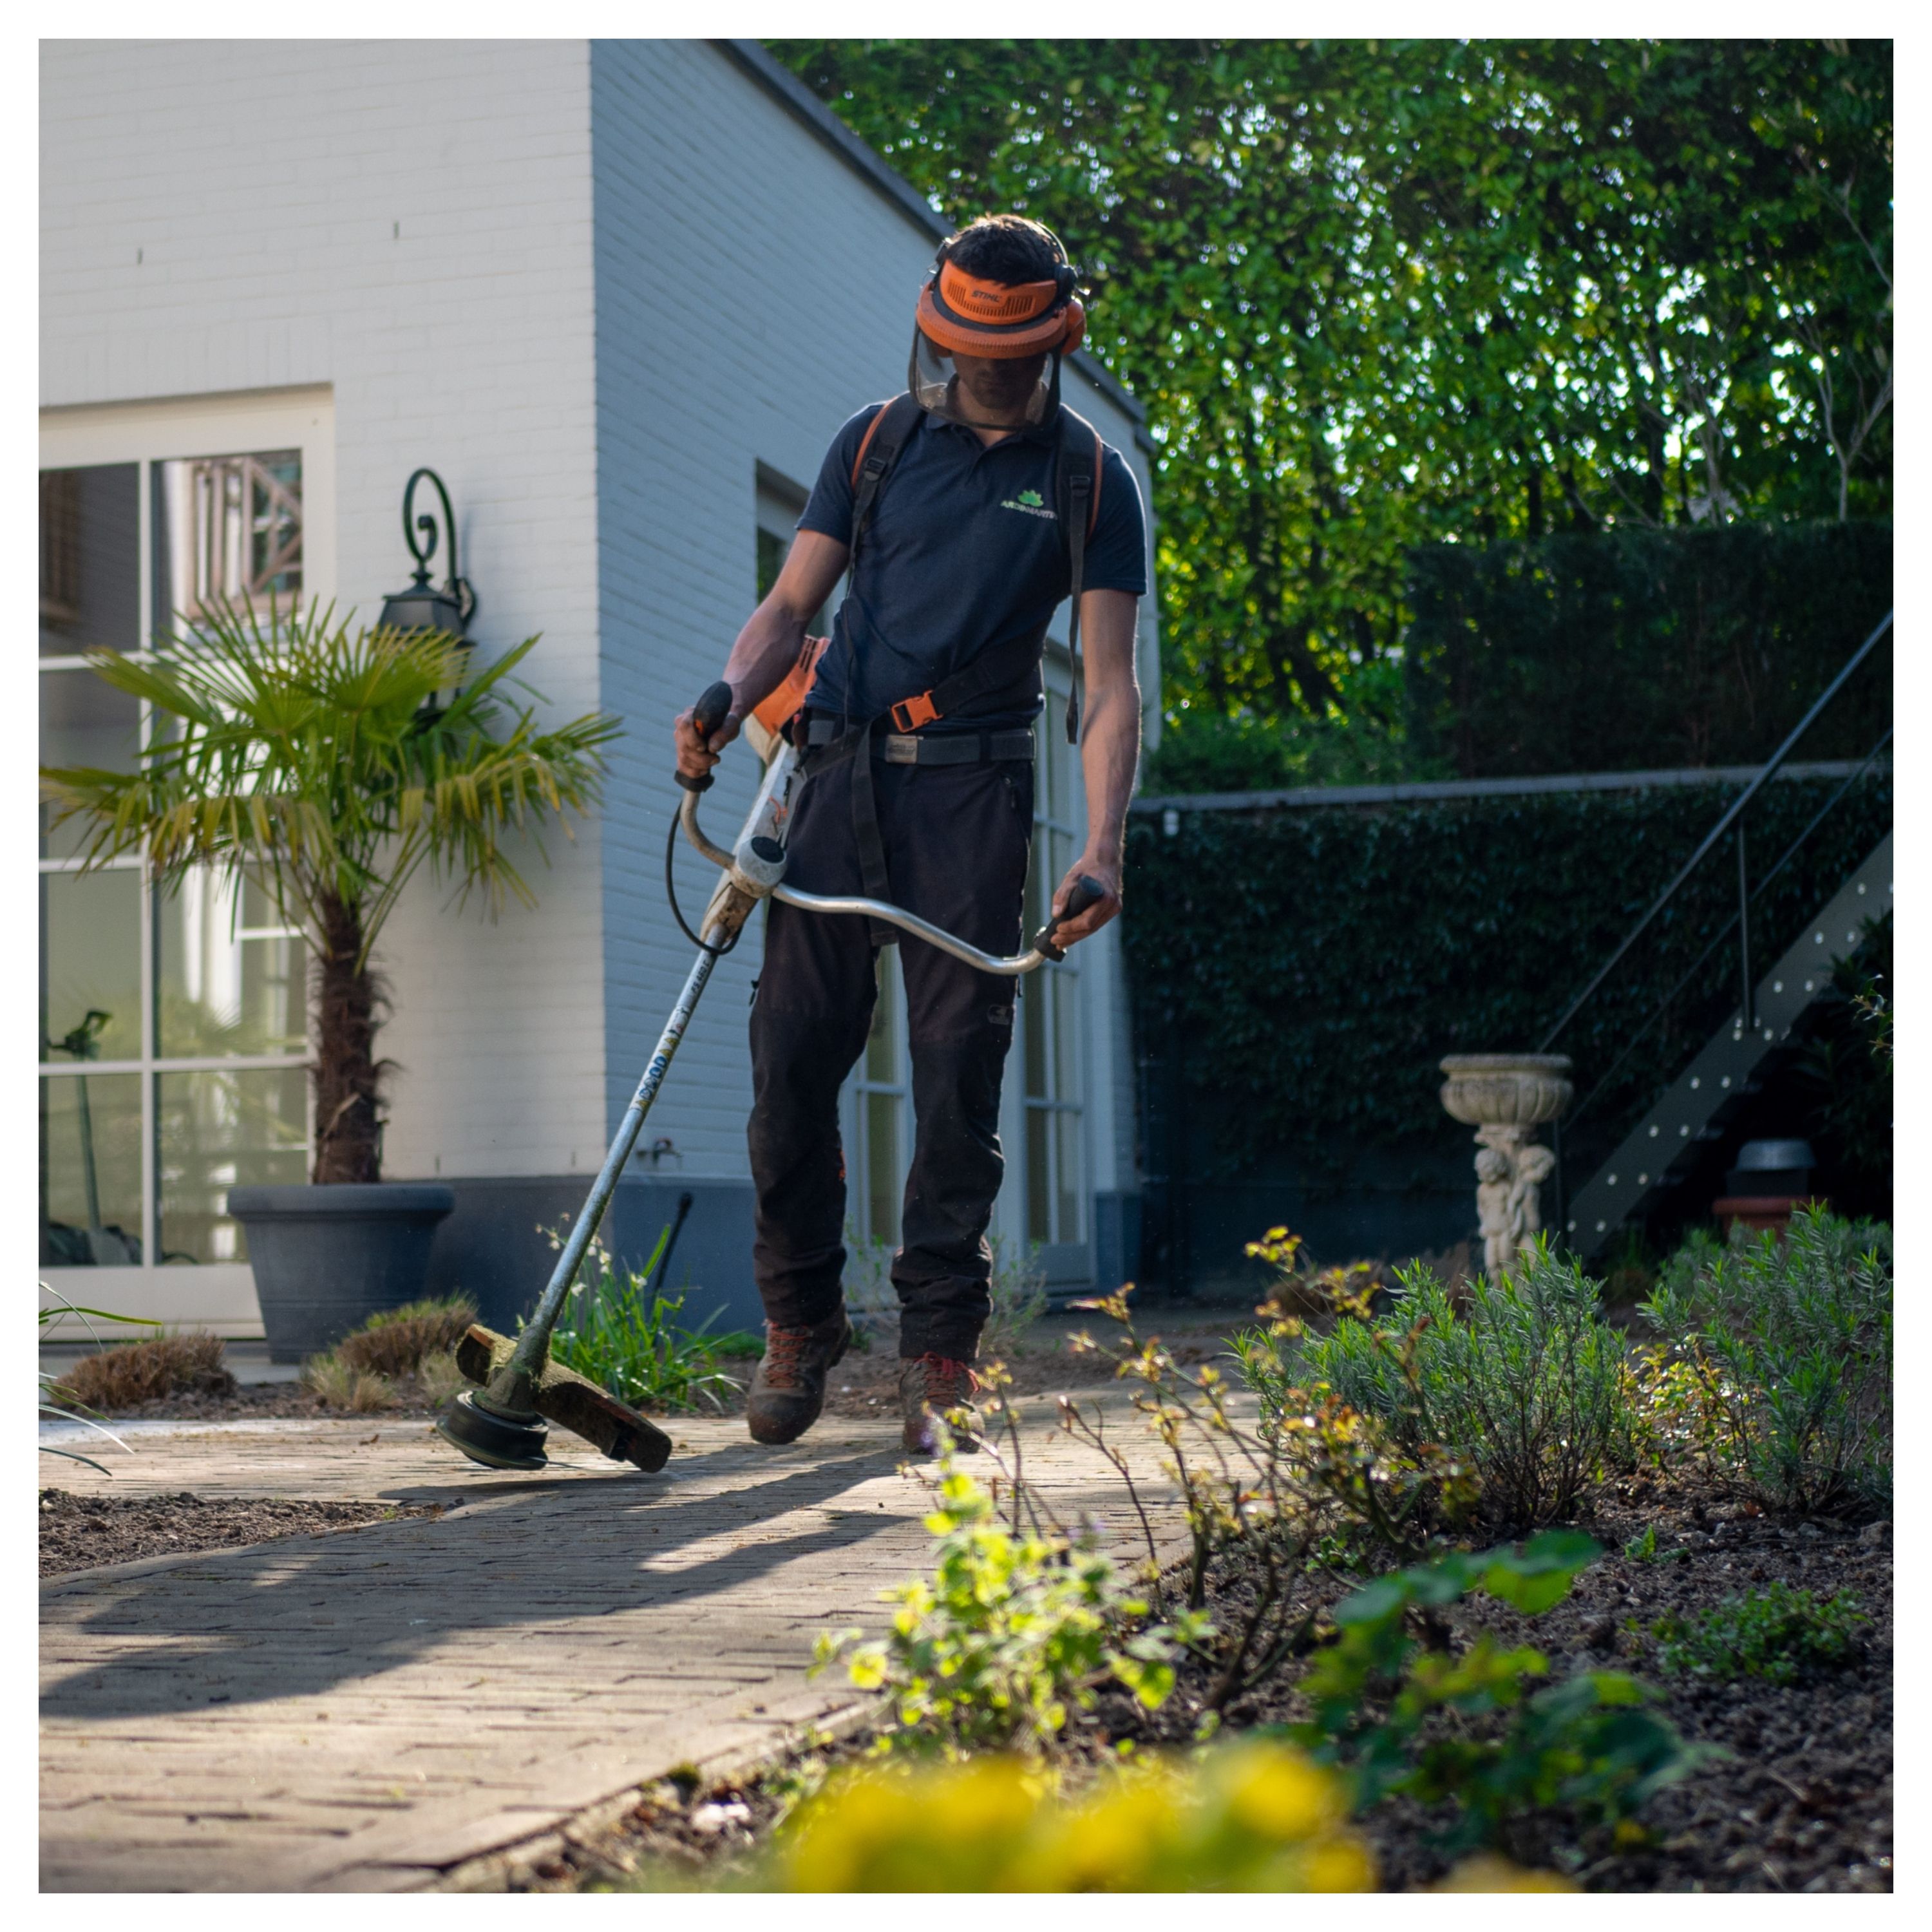 Un homme en train de désherber son jardin, avec un équipement de jardinier, lunettes, gants et protection